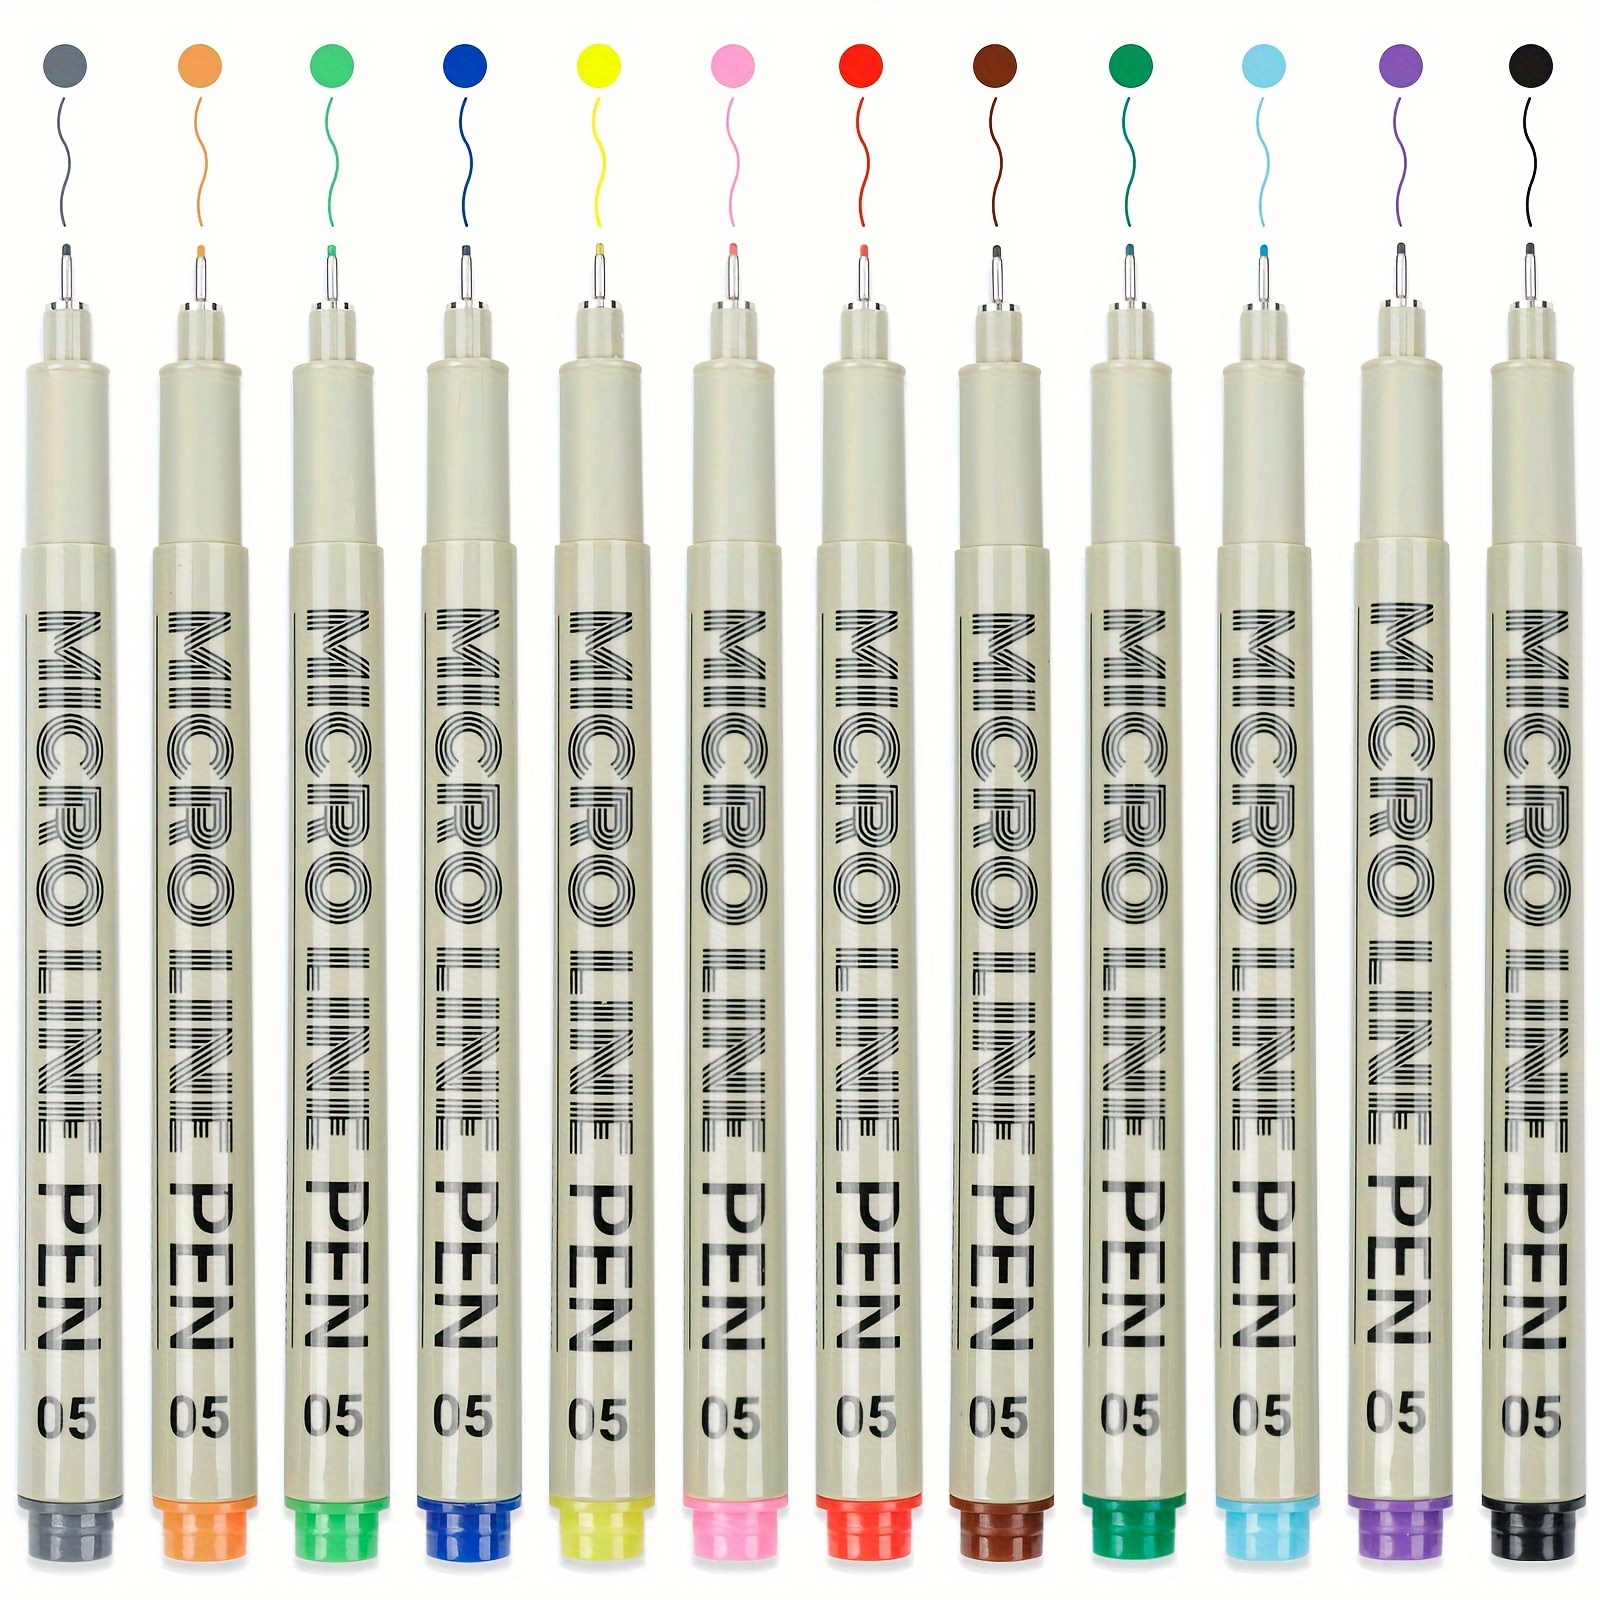 Colored Micro Pens 05 Fineliner Pens Waterproof Archival Ink - Temu